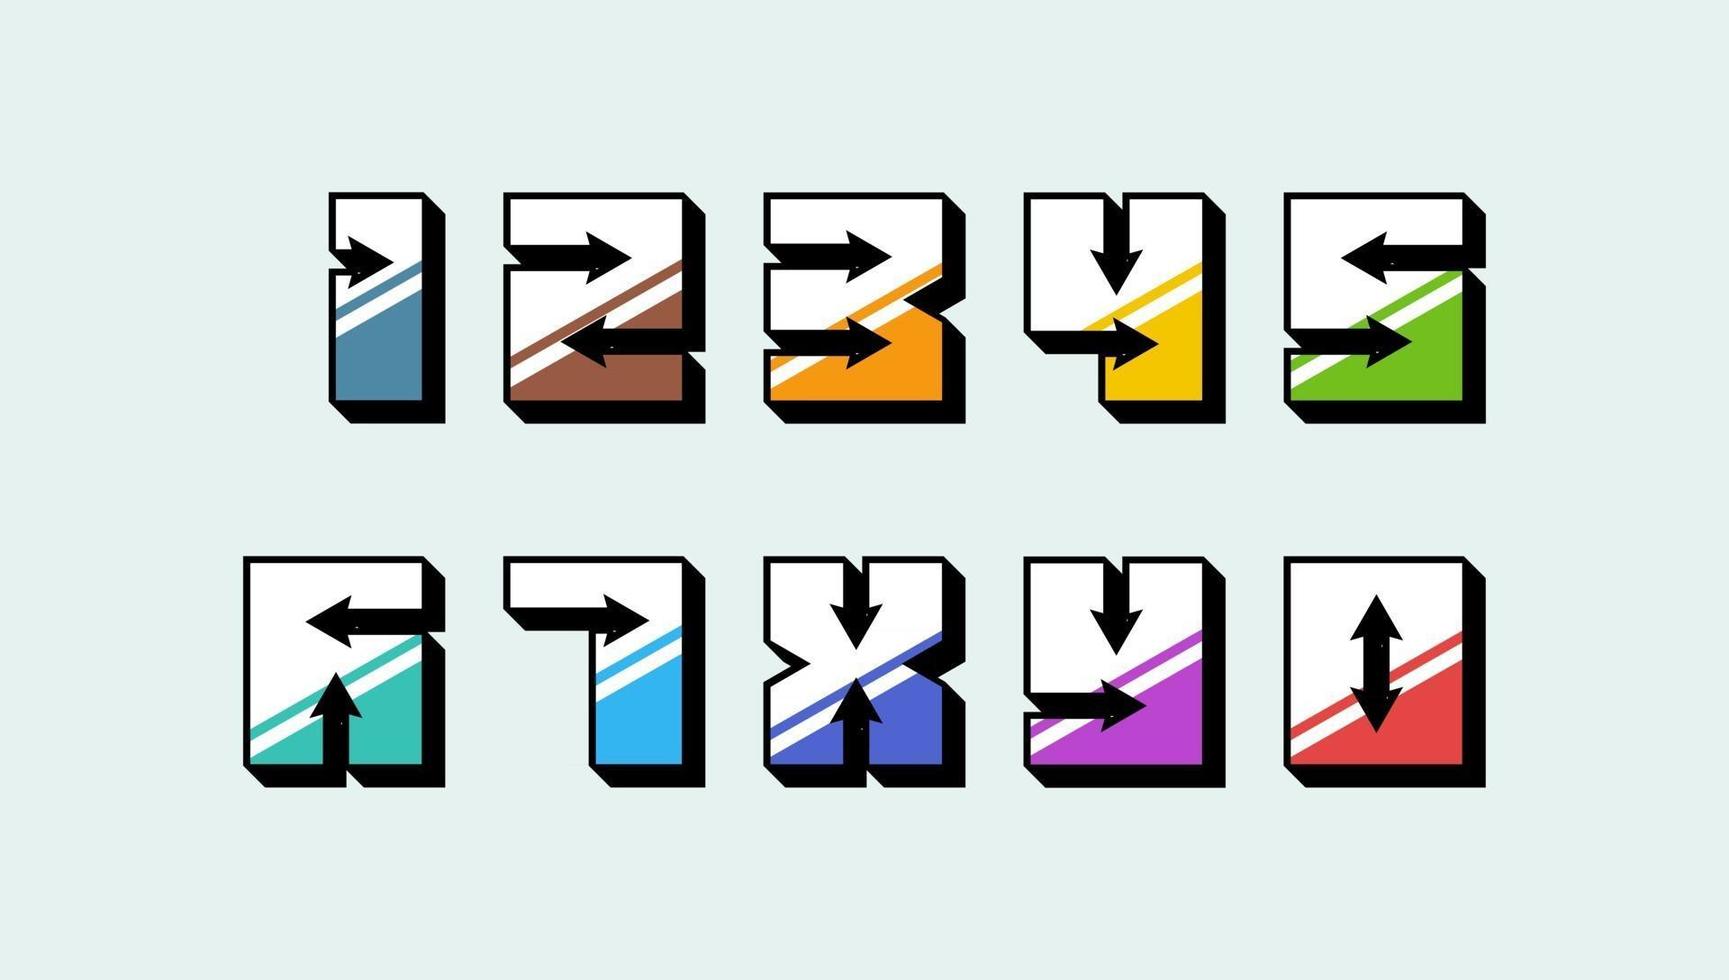 números coloridos 3d estilo retro vintage definido com setas tipografia da moda consistindo de 1 2 3 4 5 6 7 8 9 0 para design de cartaz ou cartão de felicitações. ilustração em vetor eps fonte moderna